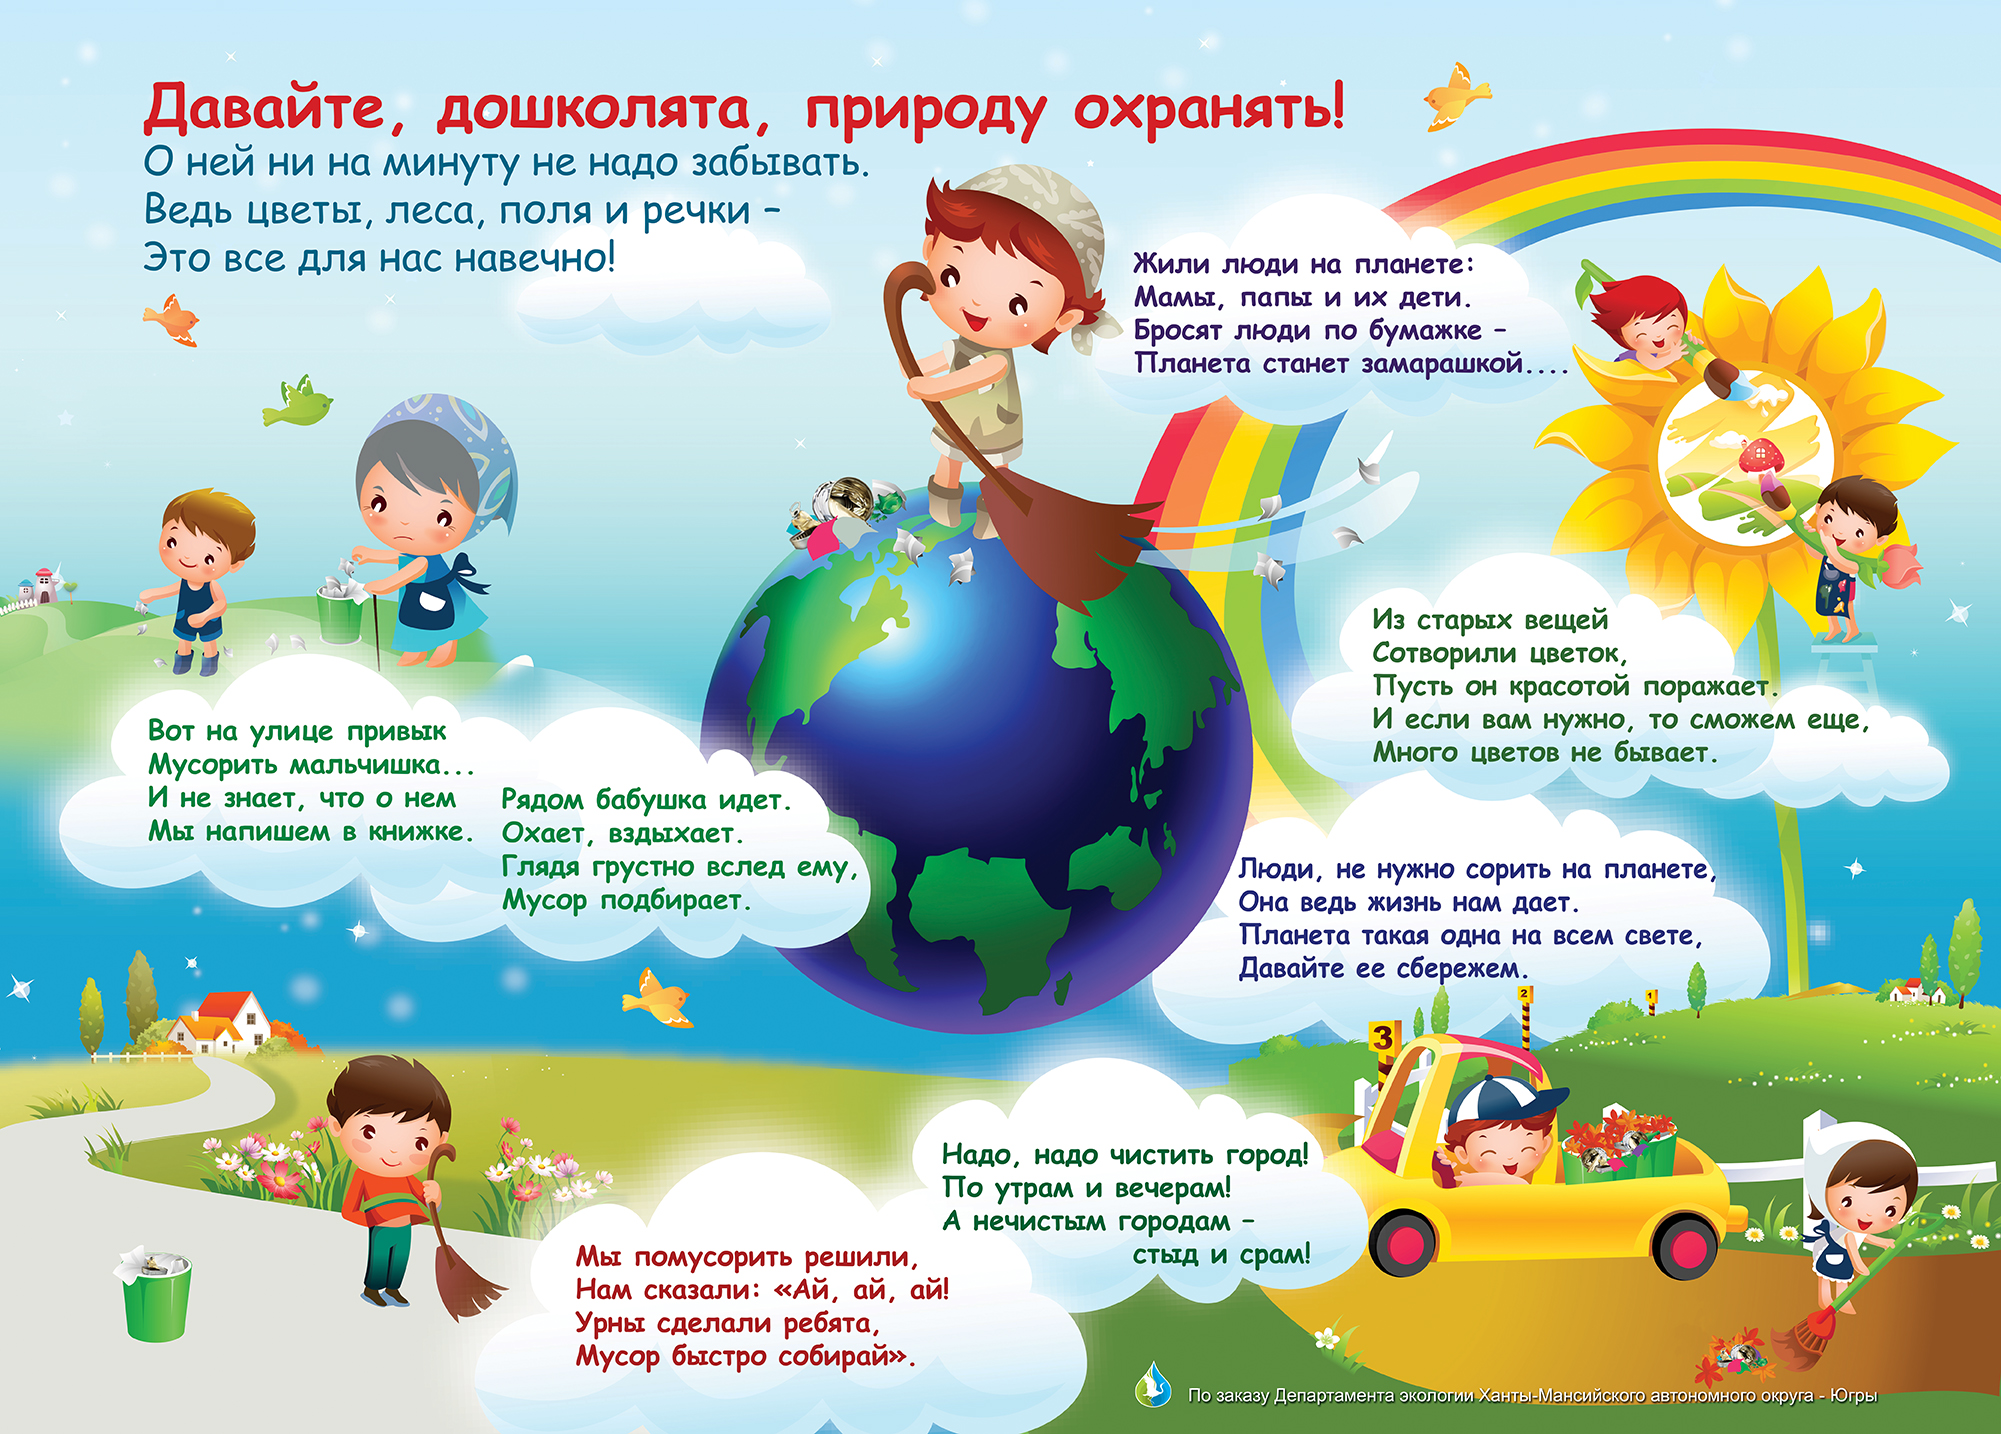 Экология словами ребенка. Экология для дошкольников. Экологические плакаты для детского сада. Экология для детей дошкольного возраста. Детям об экологии в детском саду.